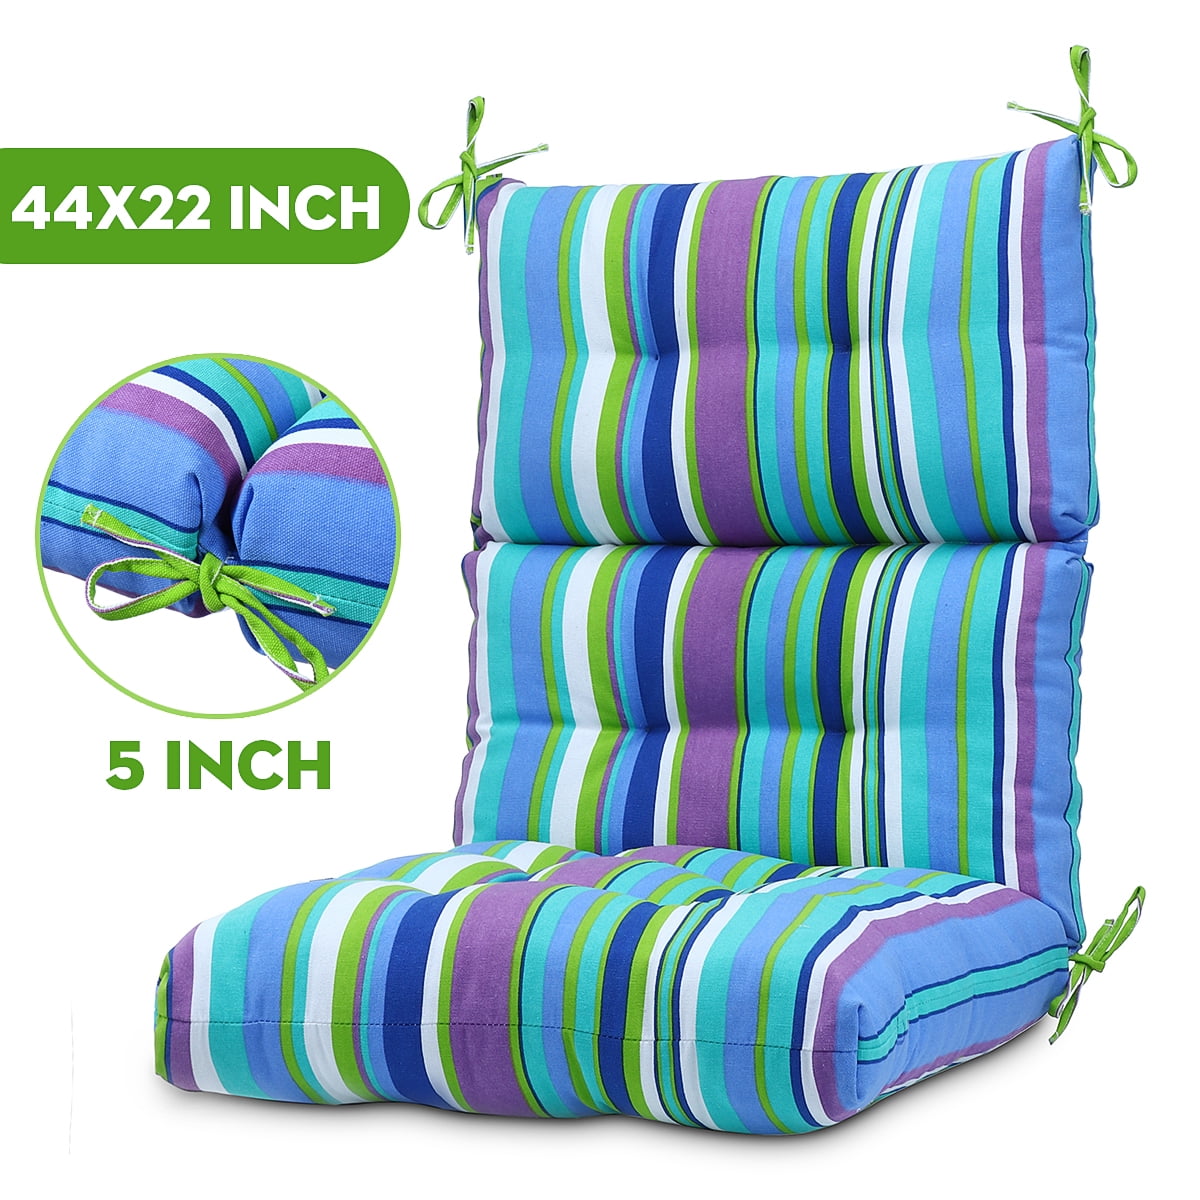 Romhouse Outdoor Chair Cushion - High Back Solid Chair Cushion High